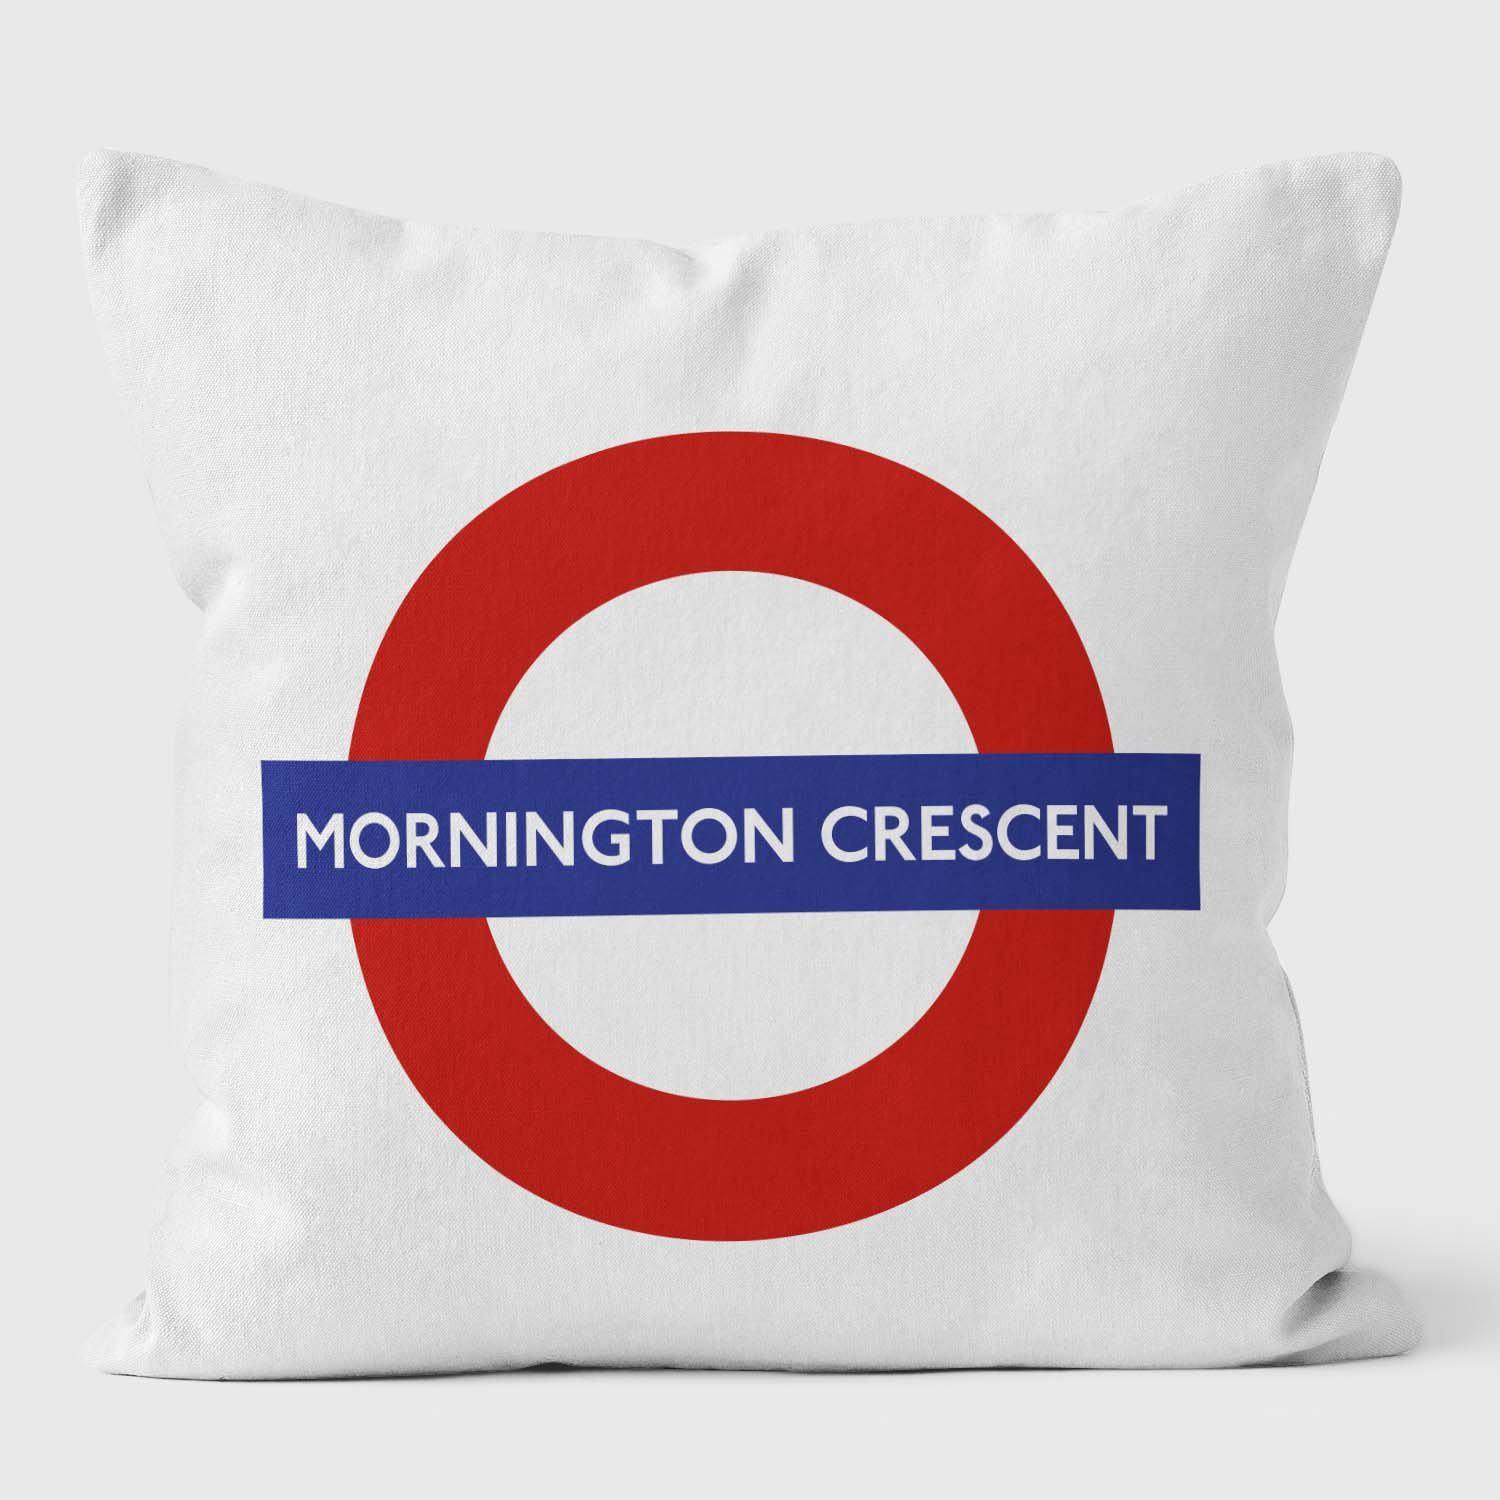 Mornington Crescent London Underground Tube Station Roundel Cushion - Handmade Cushions UK - WeLoveCushions